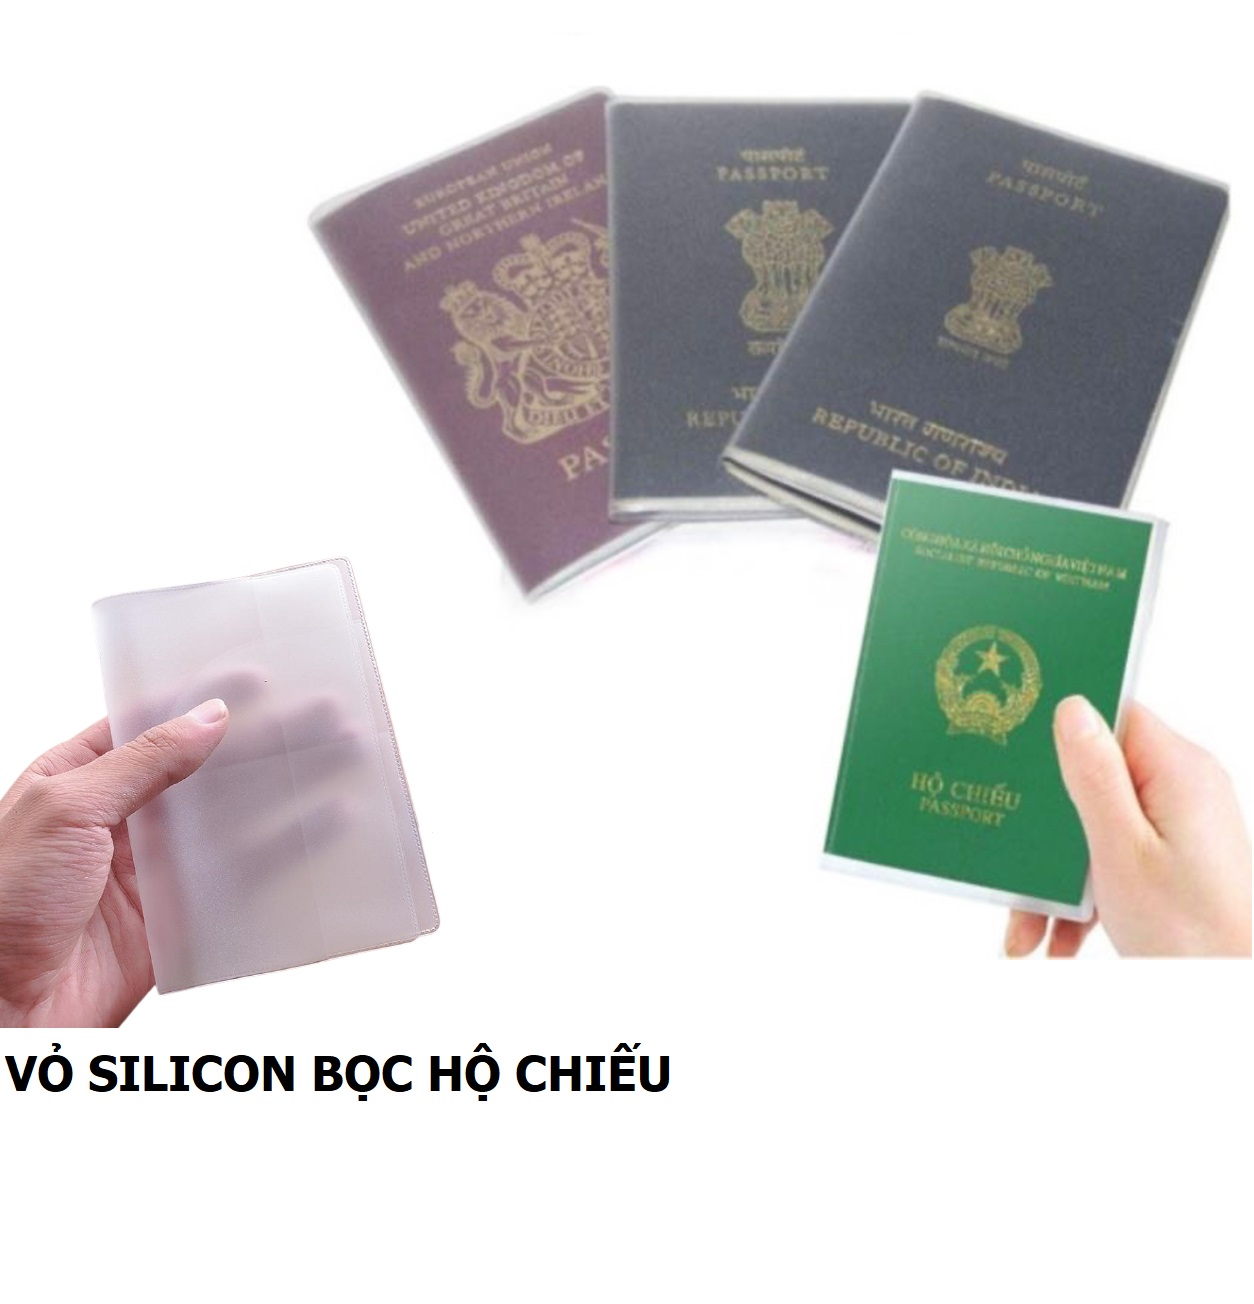 Vỏ Bọc Hộ Chiếu – Vỏ Passport Trong Suốt, Tiện Dụng, An Toàn Khi Đi Du Lịch. Phụ Kiện Home 5310